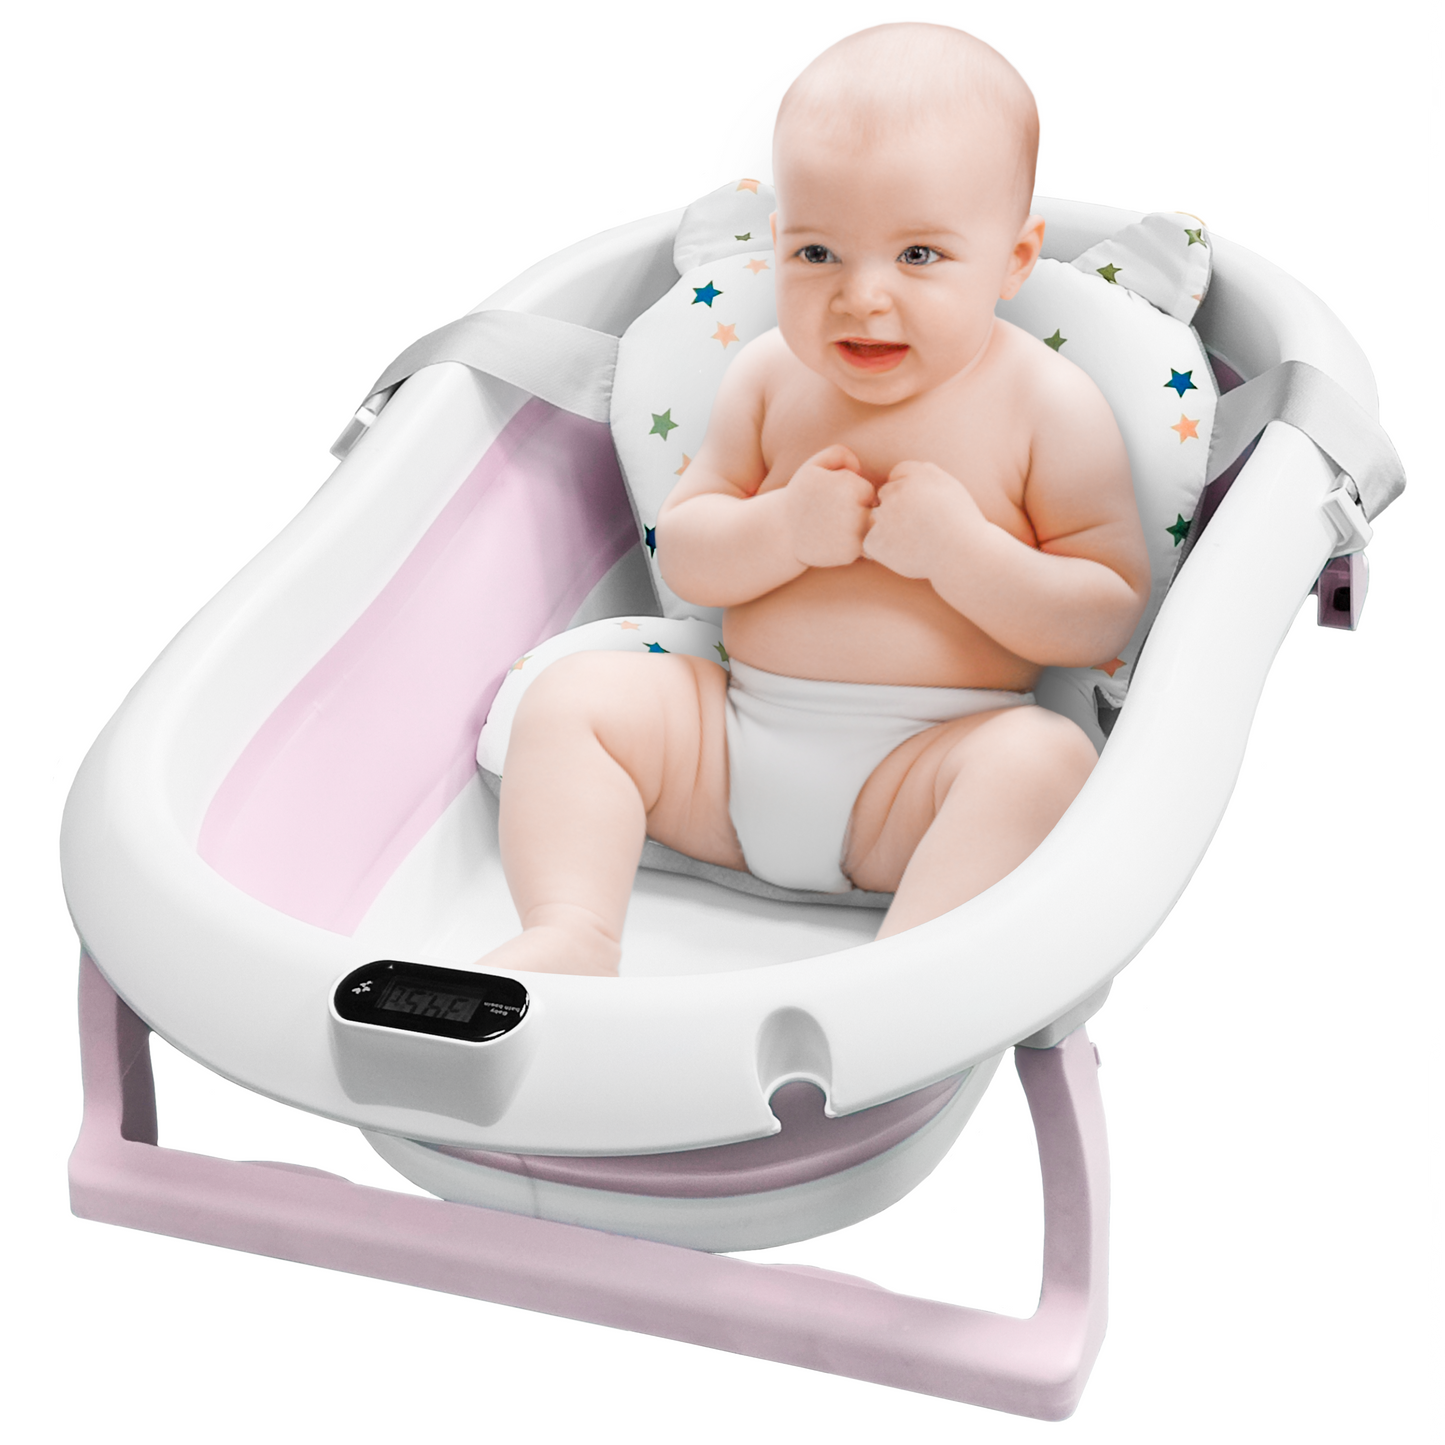 ALMAR Baby Bañera plegable bebé con termómetro cojín reductor para rec